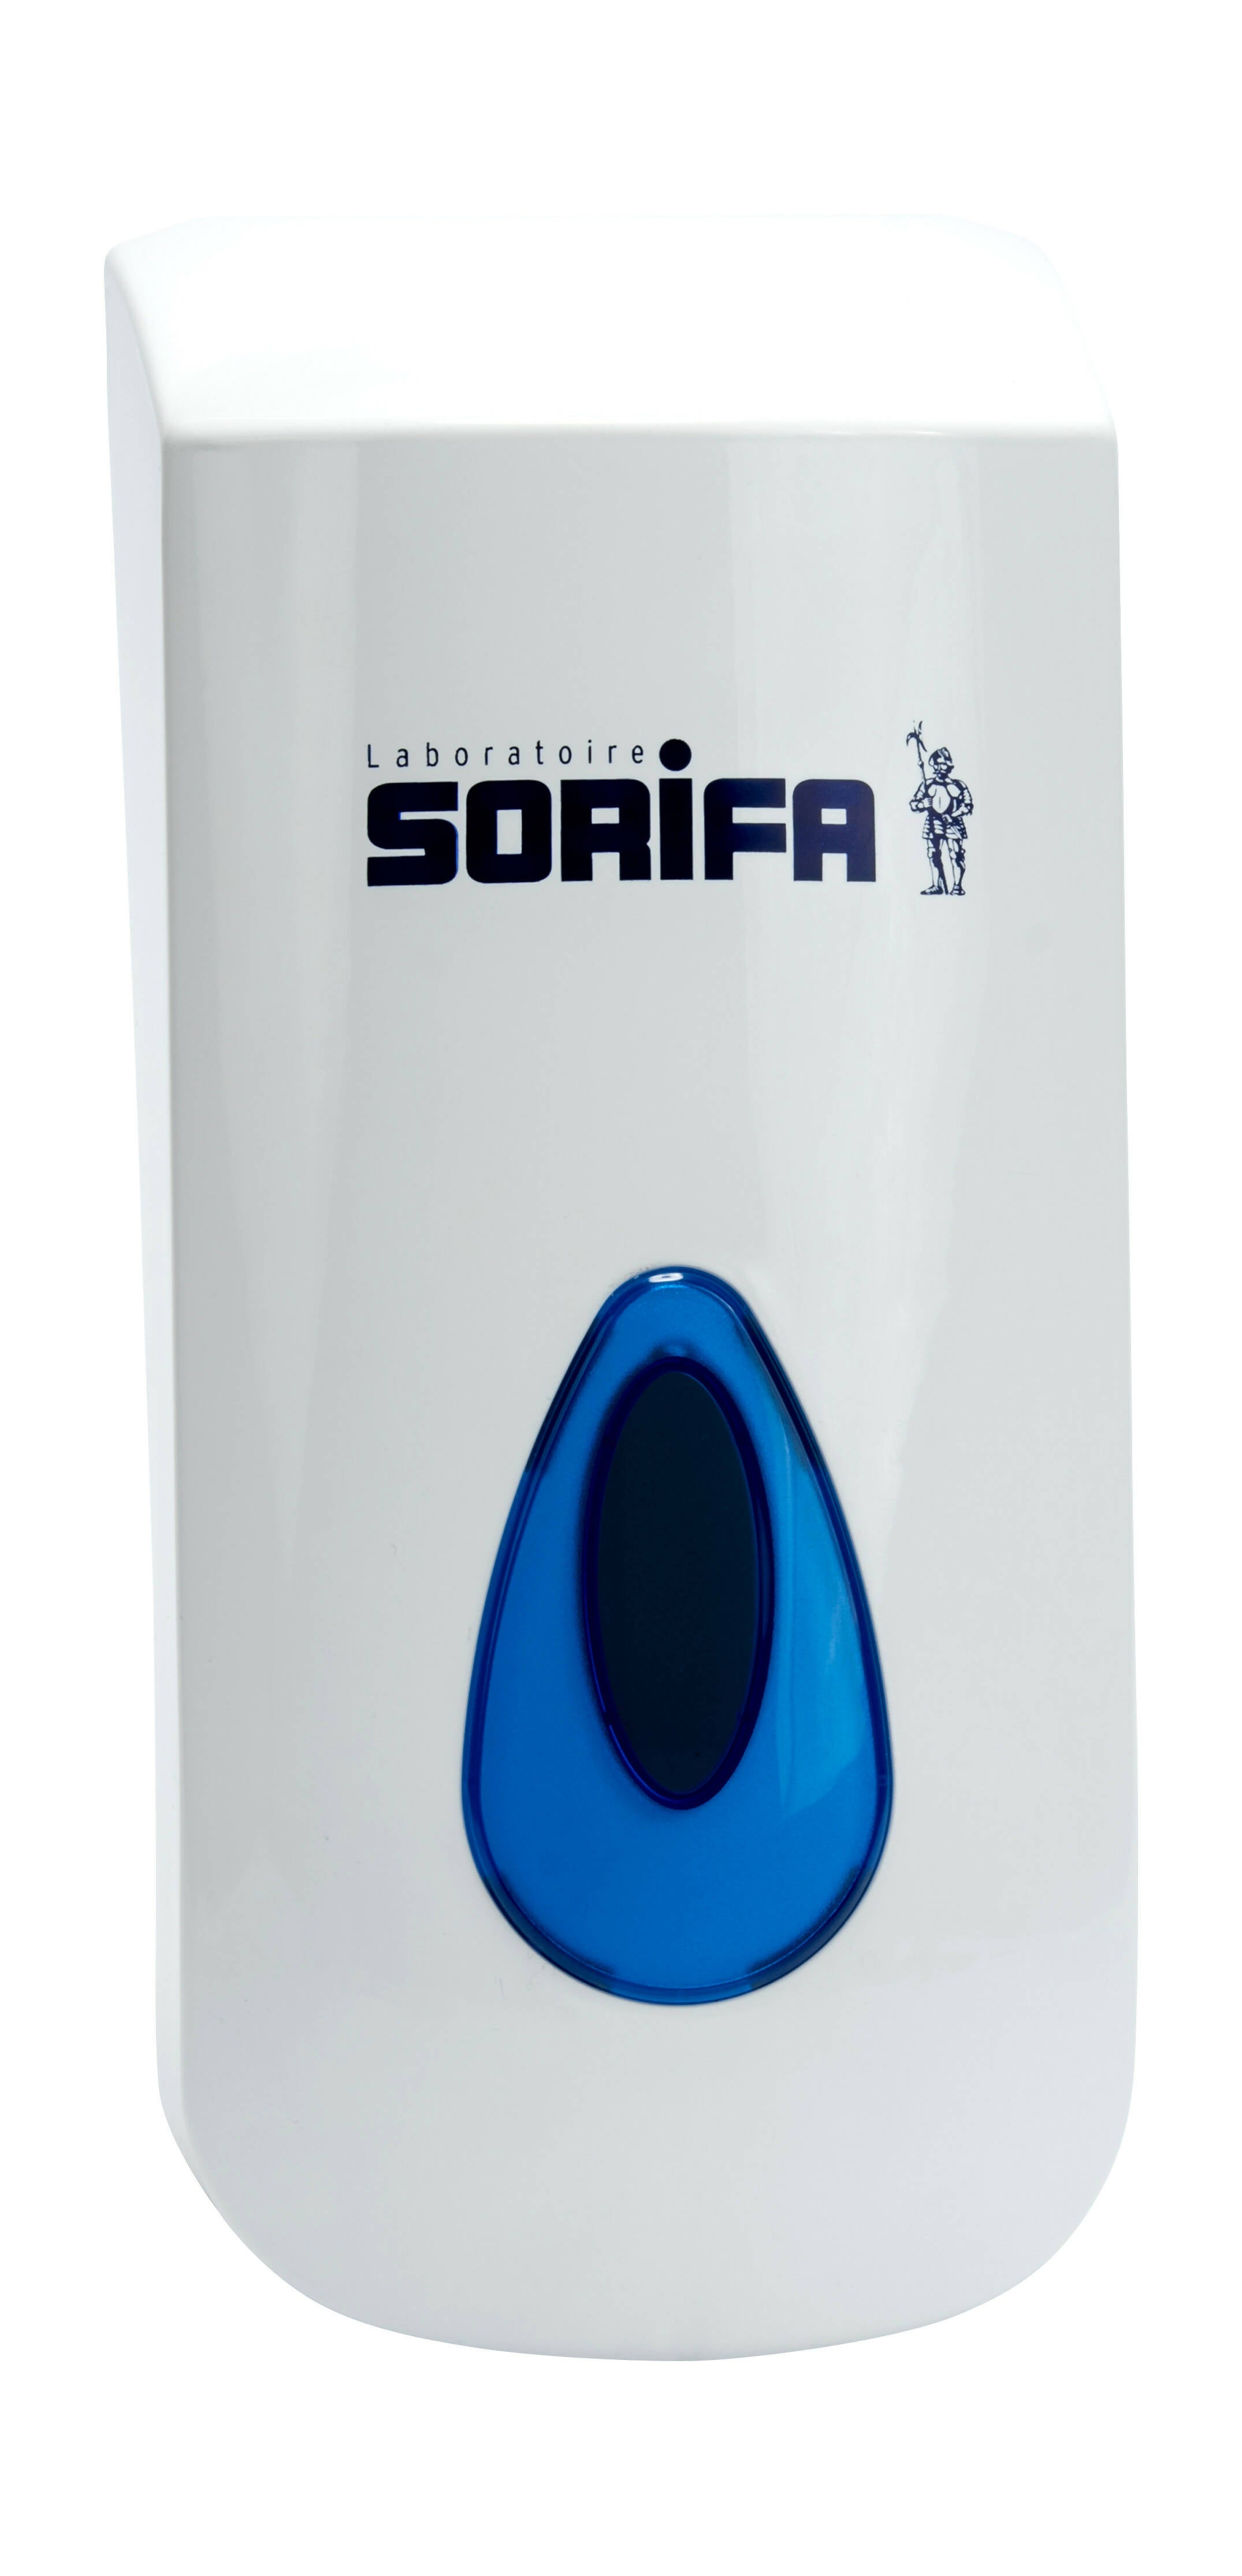 SORIFA - 5er-Set - Robuster, ergonomischer, abschließbarer Wandspender aus Metall für 1L-Flasche der Marke SORIFA - Für Gele und Flüssigseifen. - 0